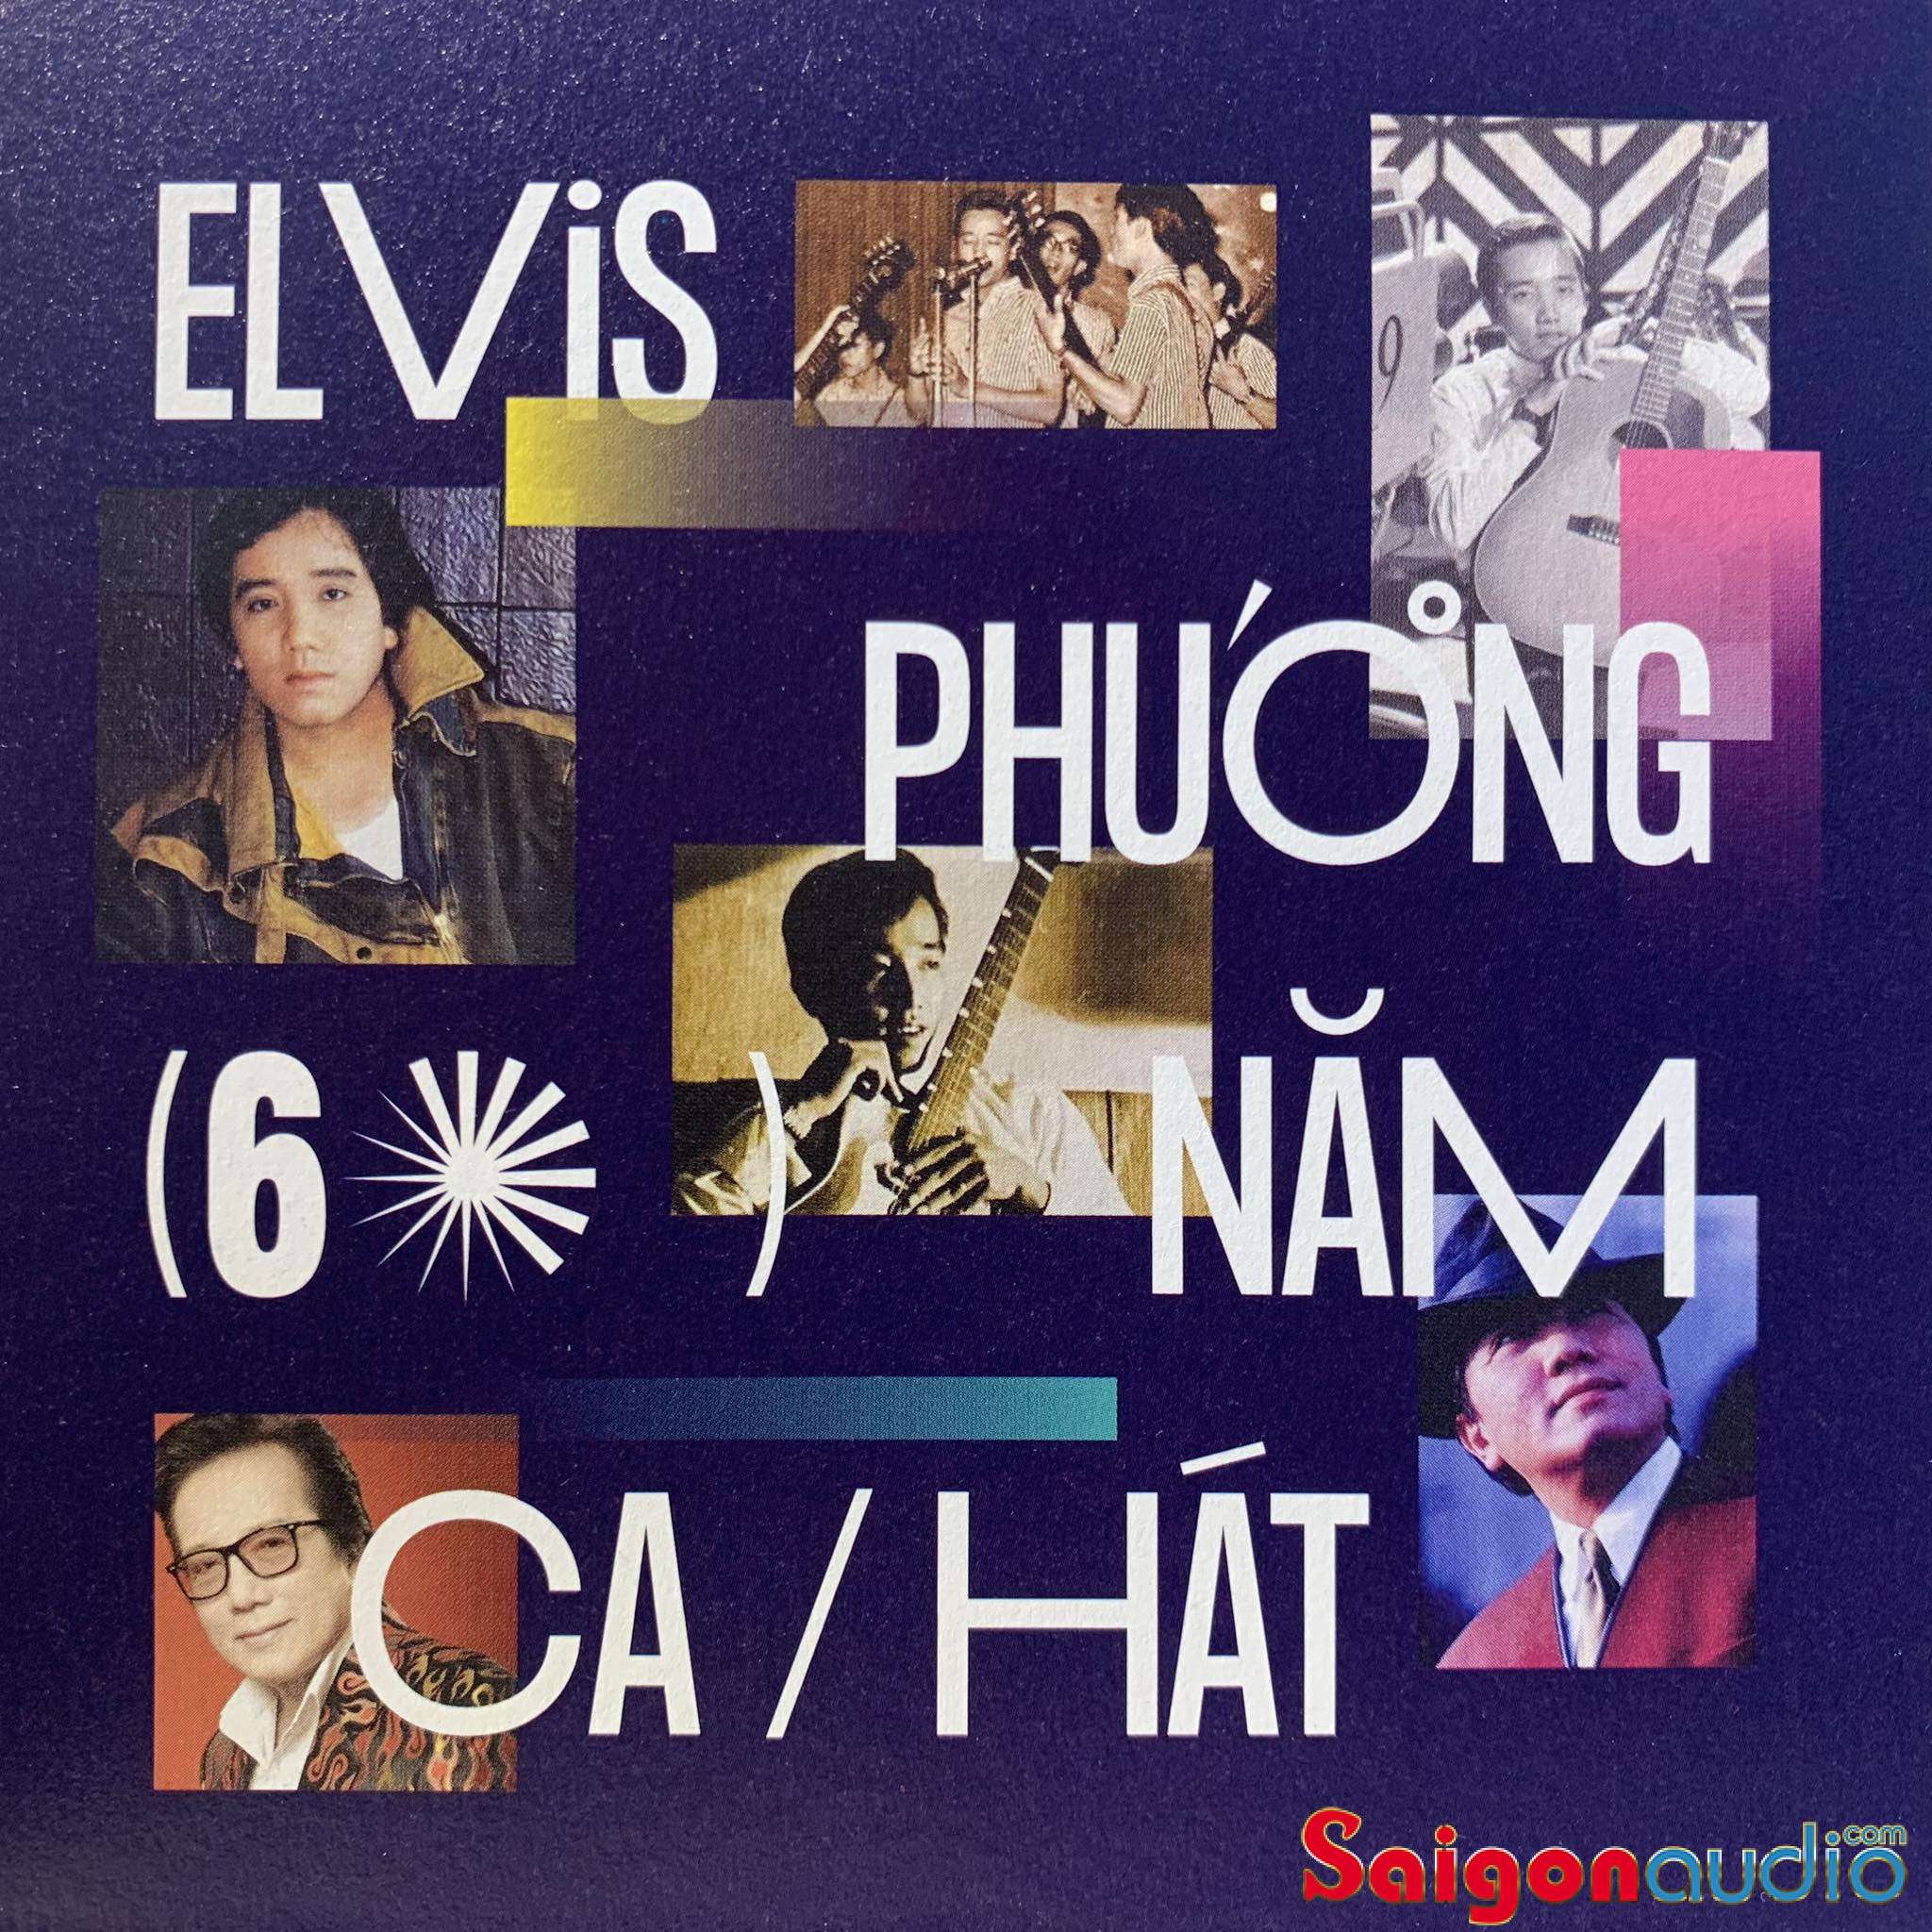 Đĩa CD gốc Elvis Phương - 60 Năm Ca Hát (Free ship khi mua 2 đĩa CD cùng hoặc khác loại)